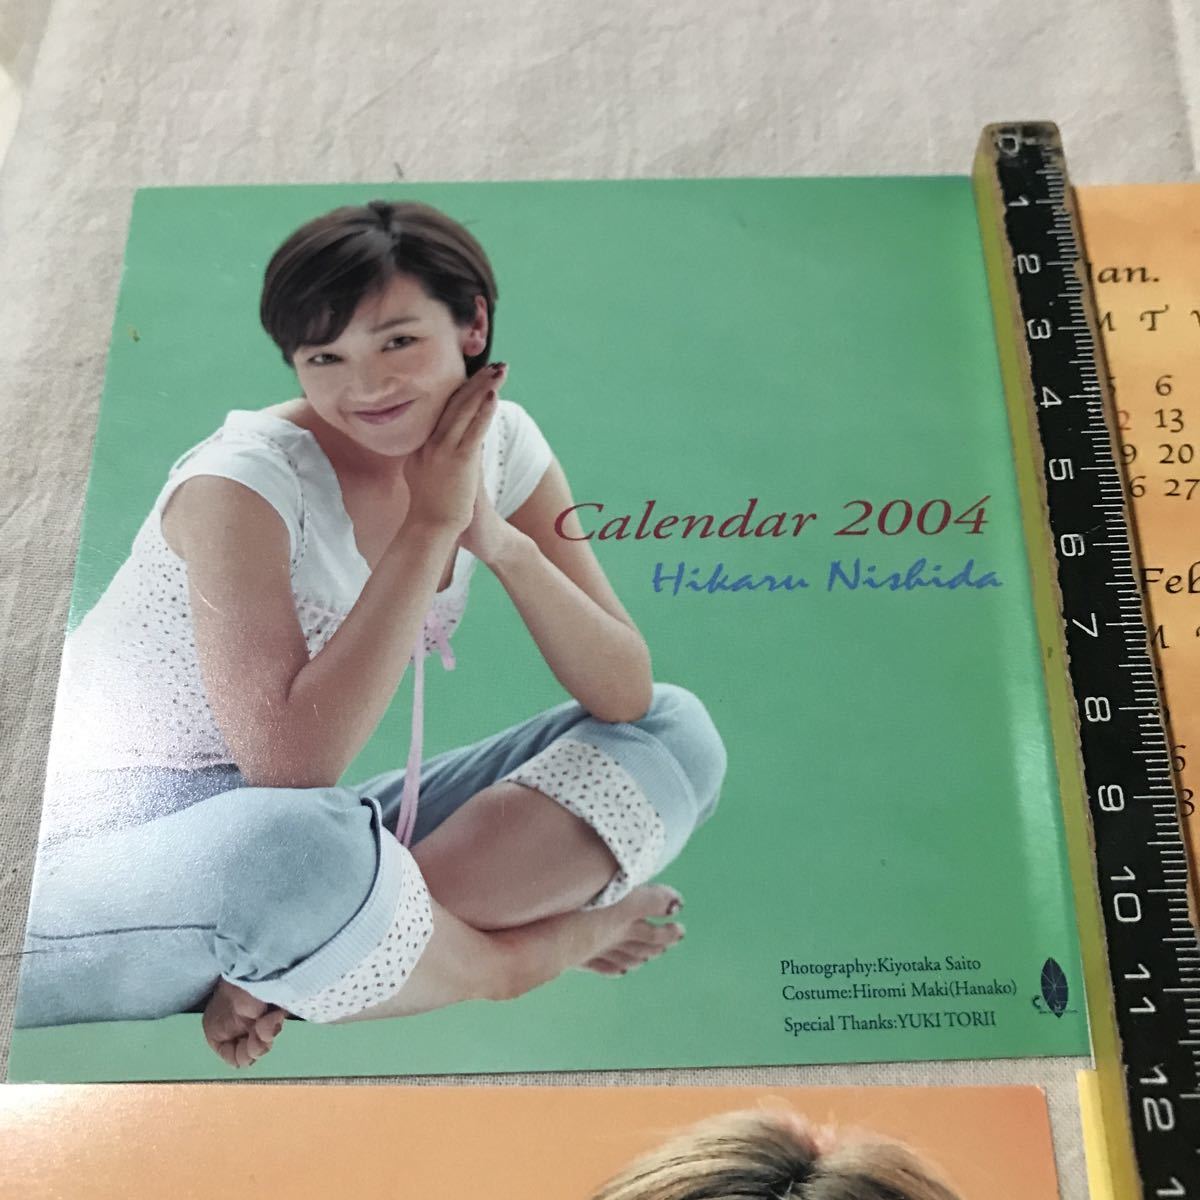 ★ 西田ひかる 2004年 スクエア カレンダー ★検索★ 昔のアイドル タレント 女優 資料 コレクション